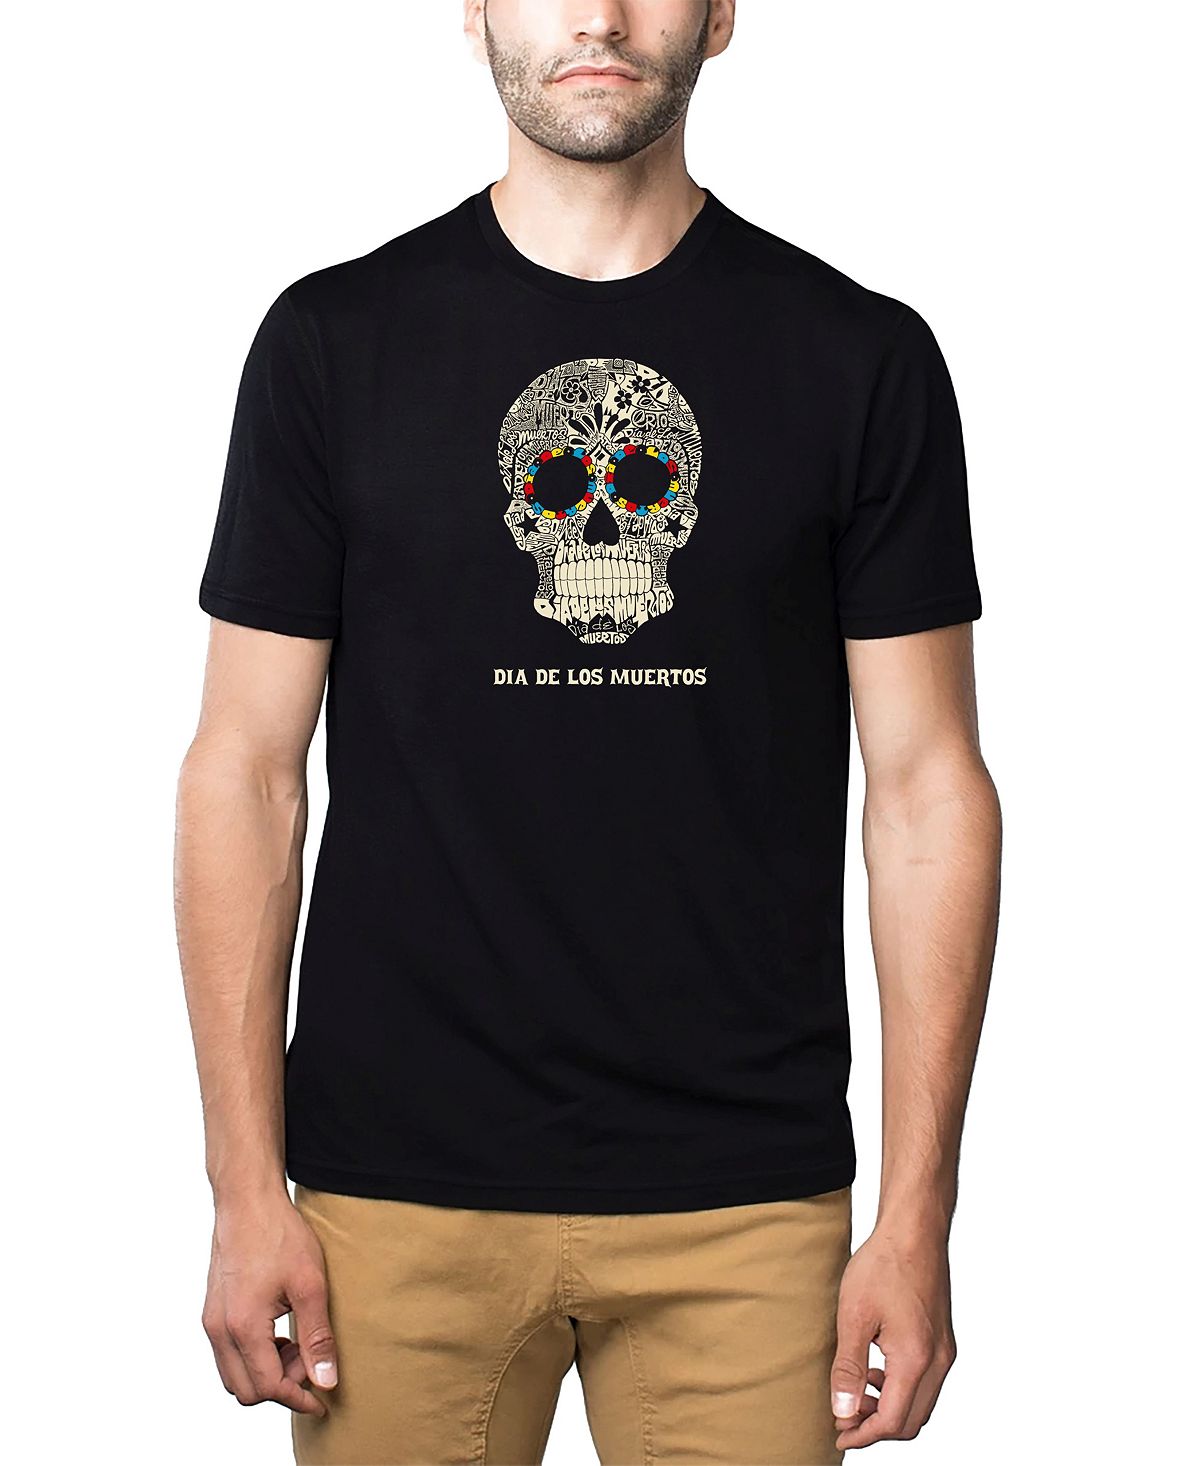 Мужская футболка премиум-класса word art - dia de los muertos LA Pop Art, черный мужская футболка сахарный череп с цветами l черный